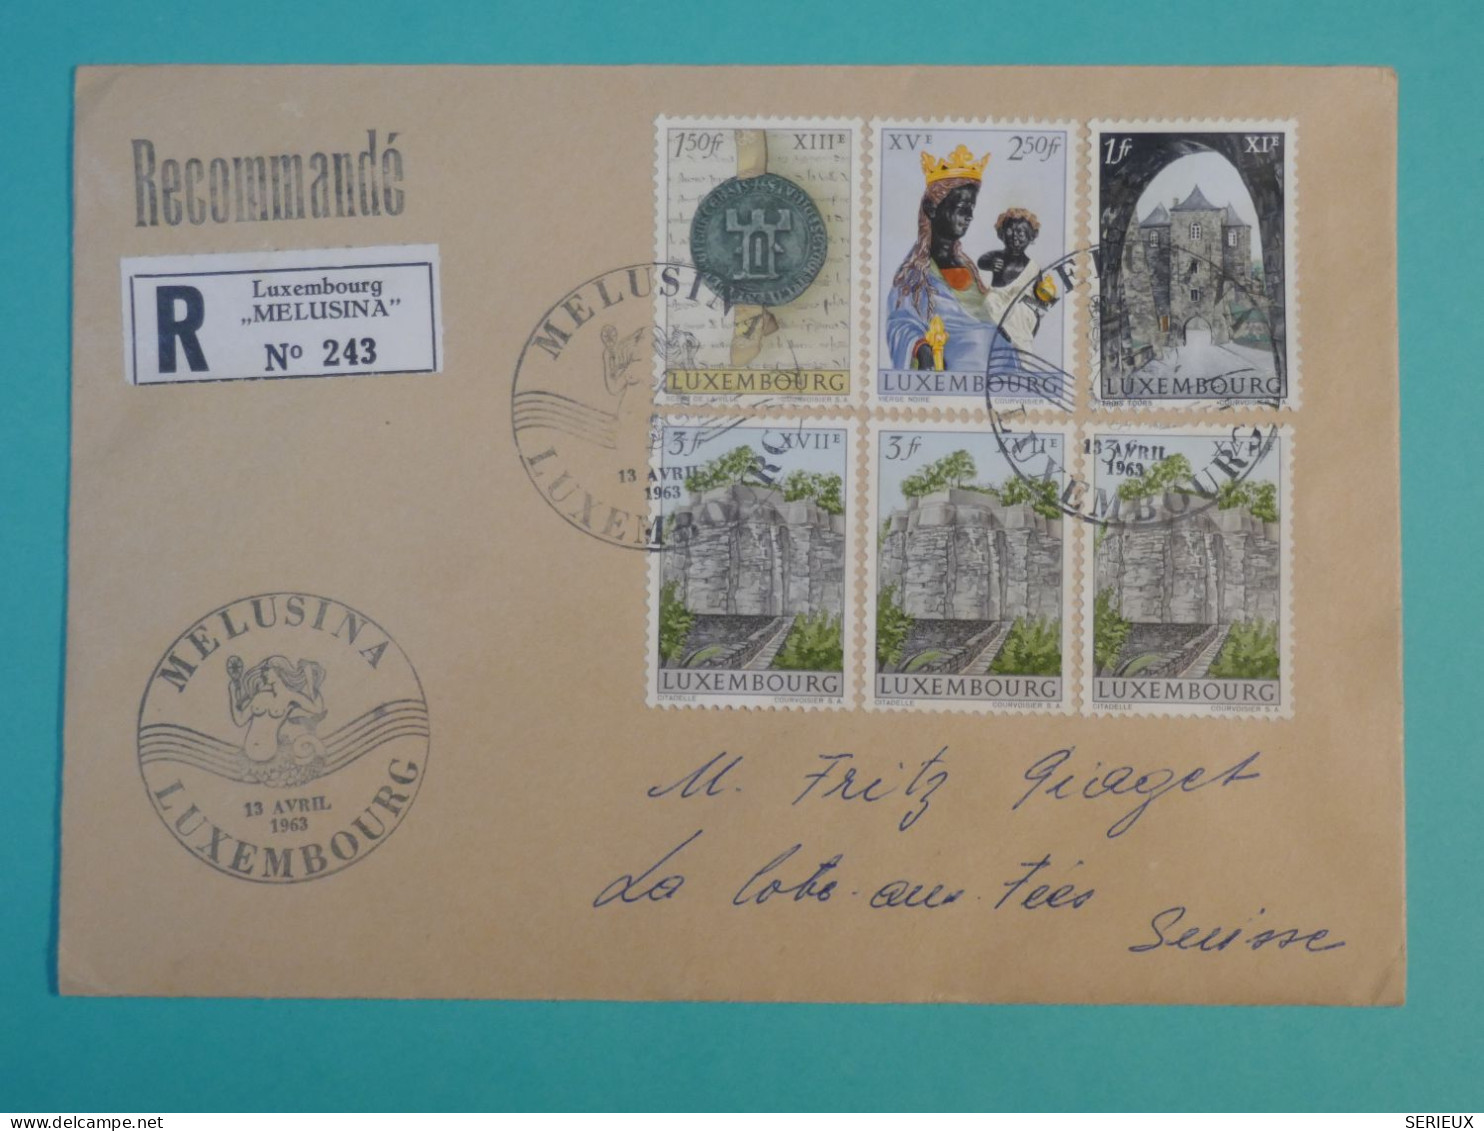 AG0  LUXEMBOURG  BELLE LETTRE RECO  1963    MELUSINA A LA COTE AUX FEES  SUISSE+   +AFF. INTERESSANT++ + - Storia Postale